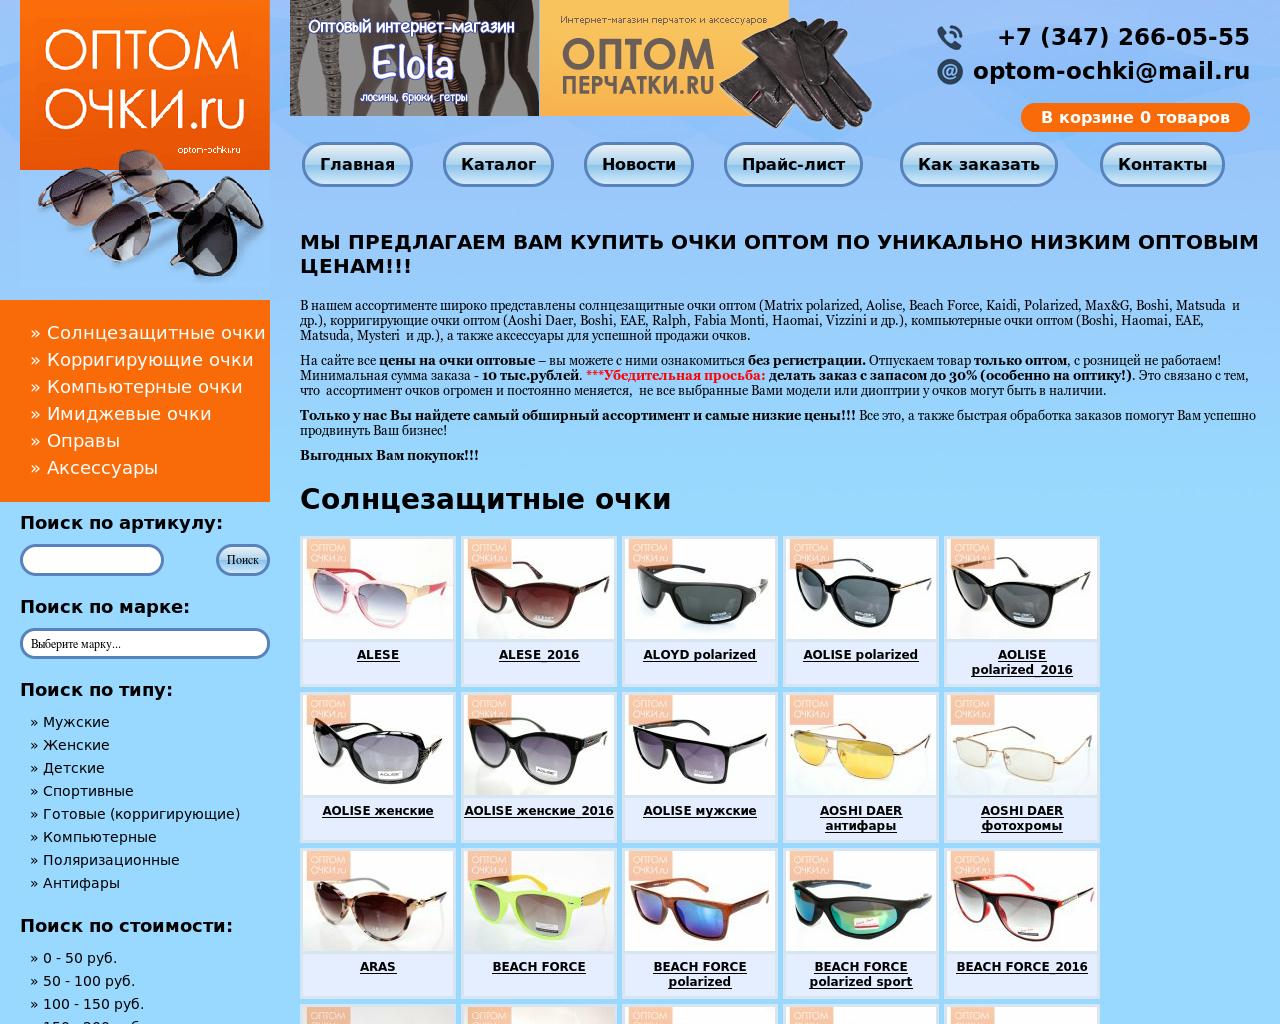 Изображение сайта optom-ochki.ru в разрешении 1280x1024